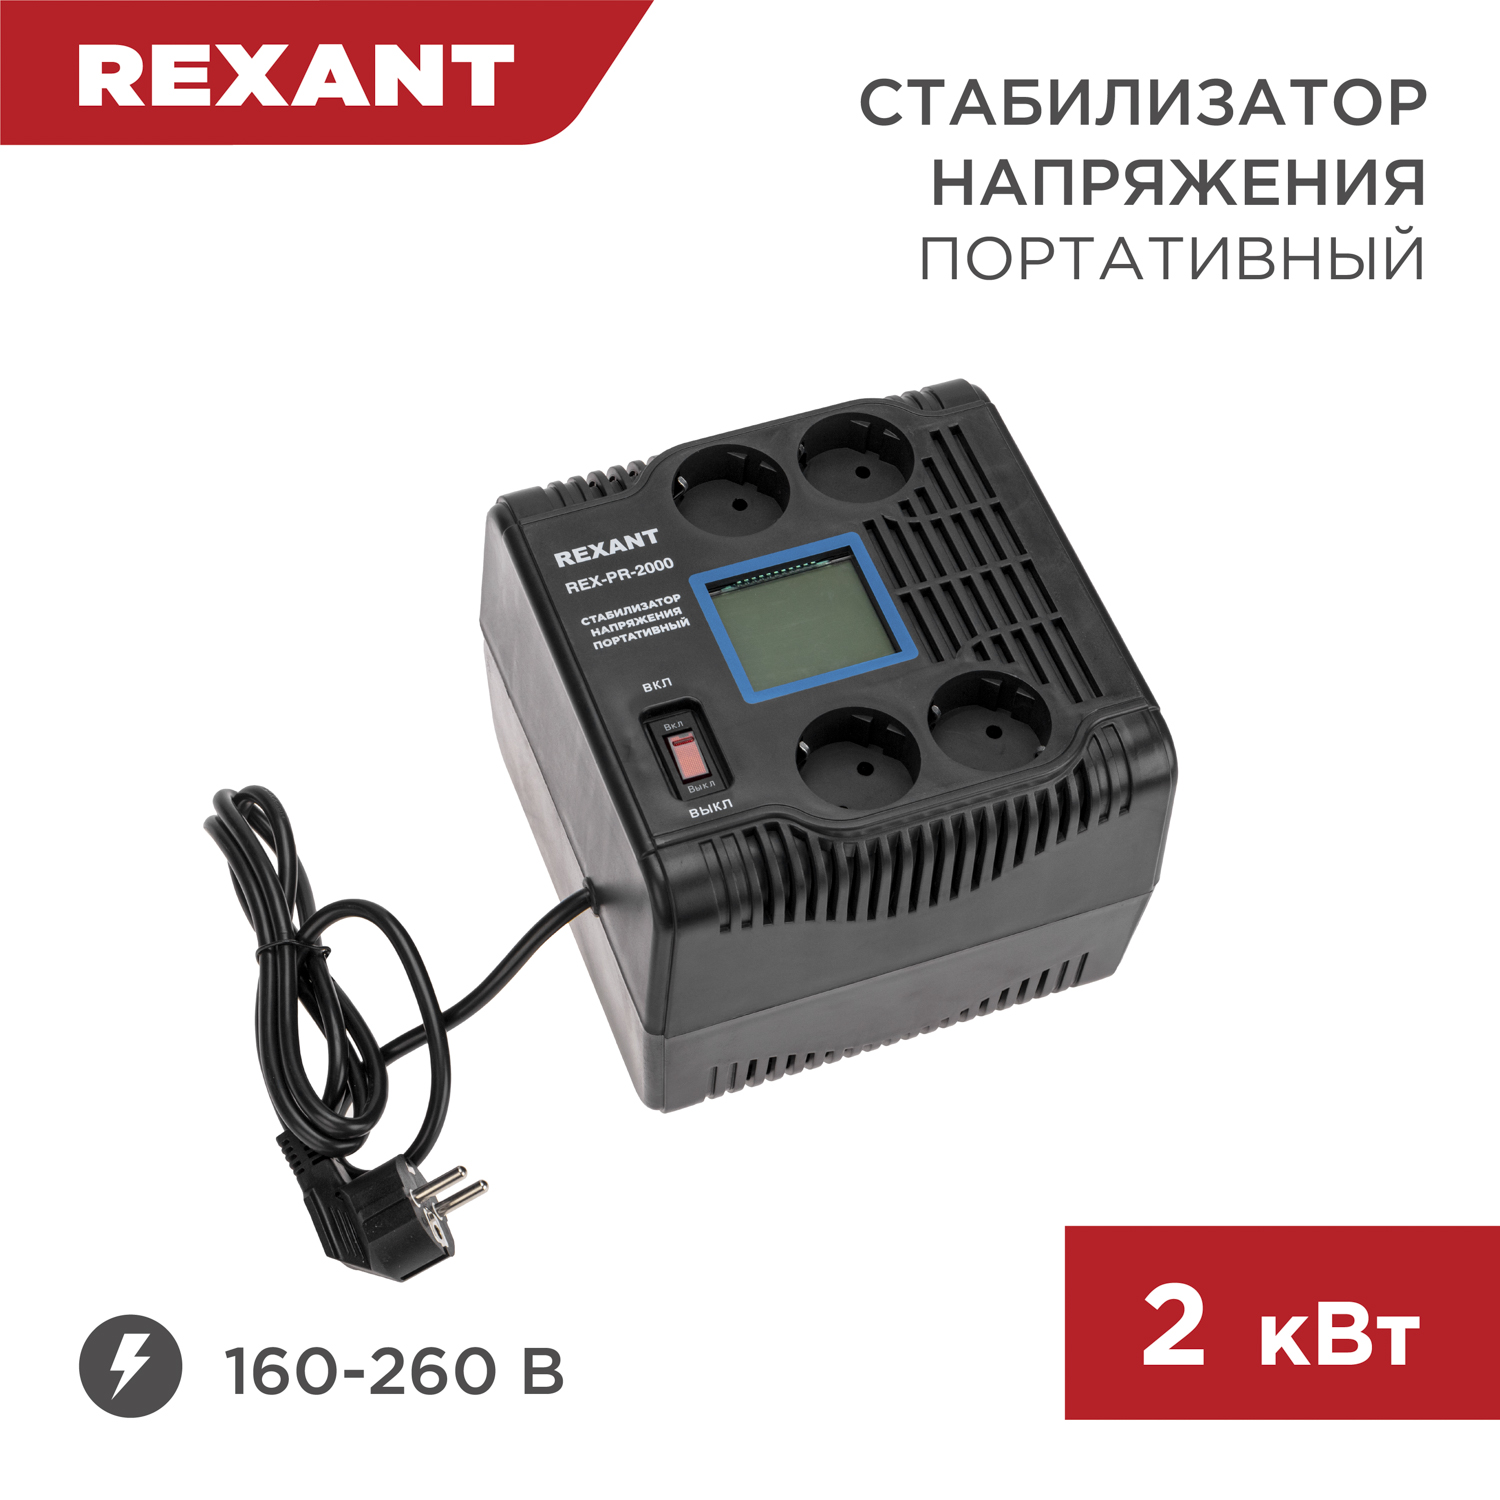 Стабилизатор напряжения портативный REXANT REX-PR-2000 11-5032 автомобильный портативный компрессор качок